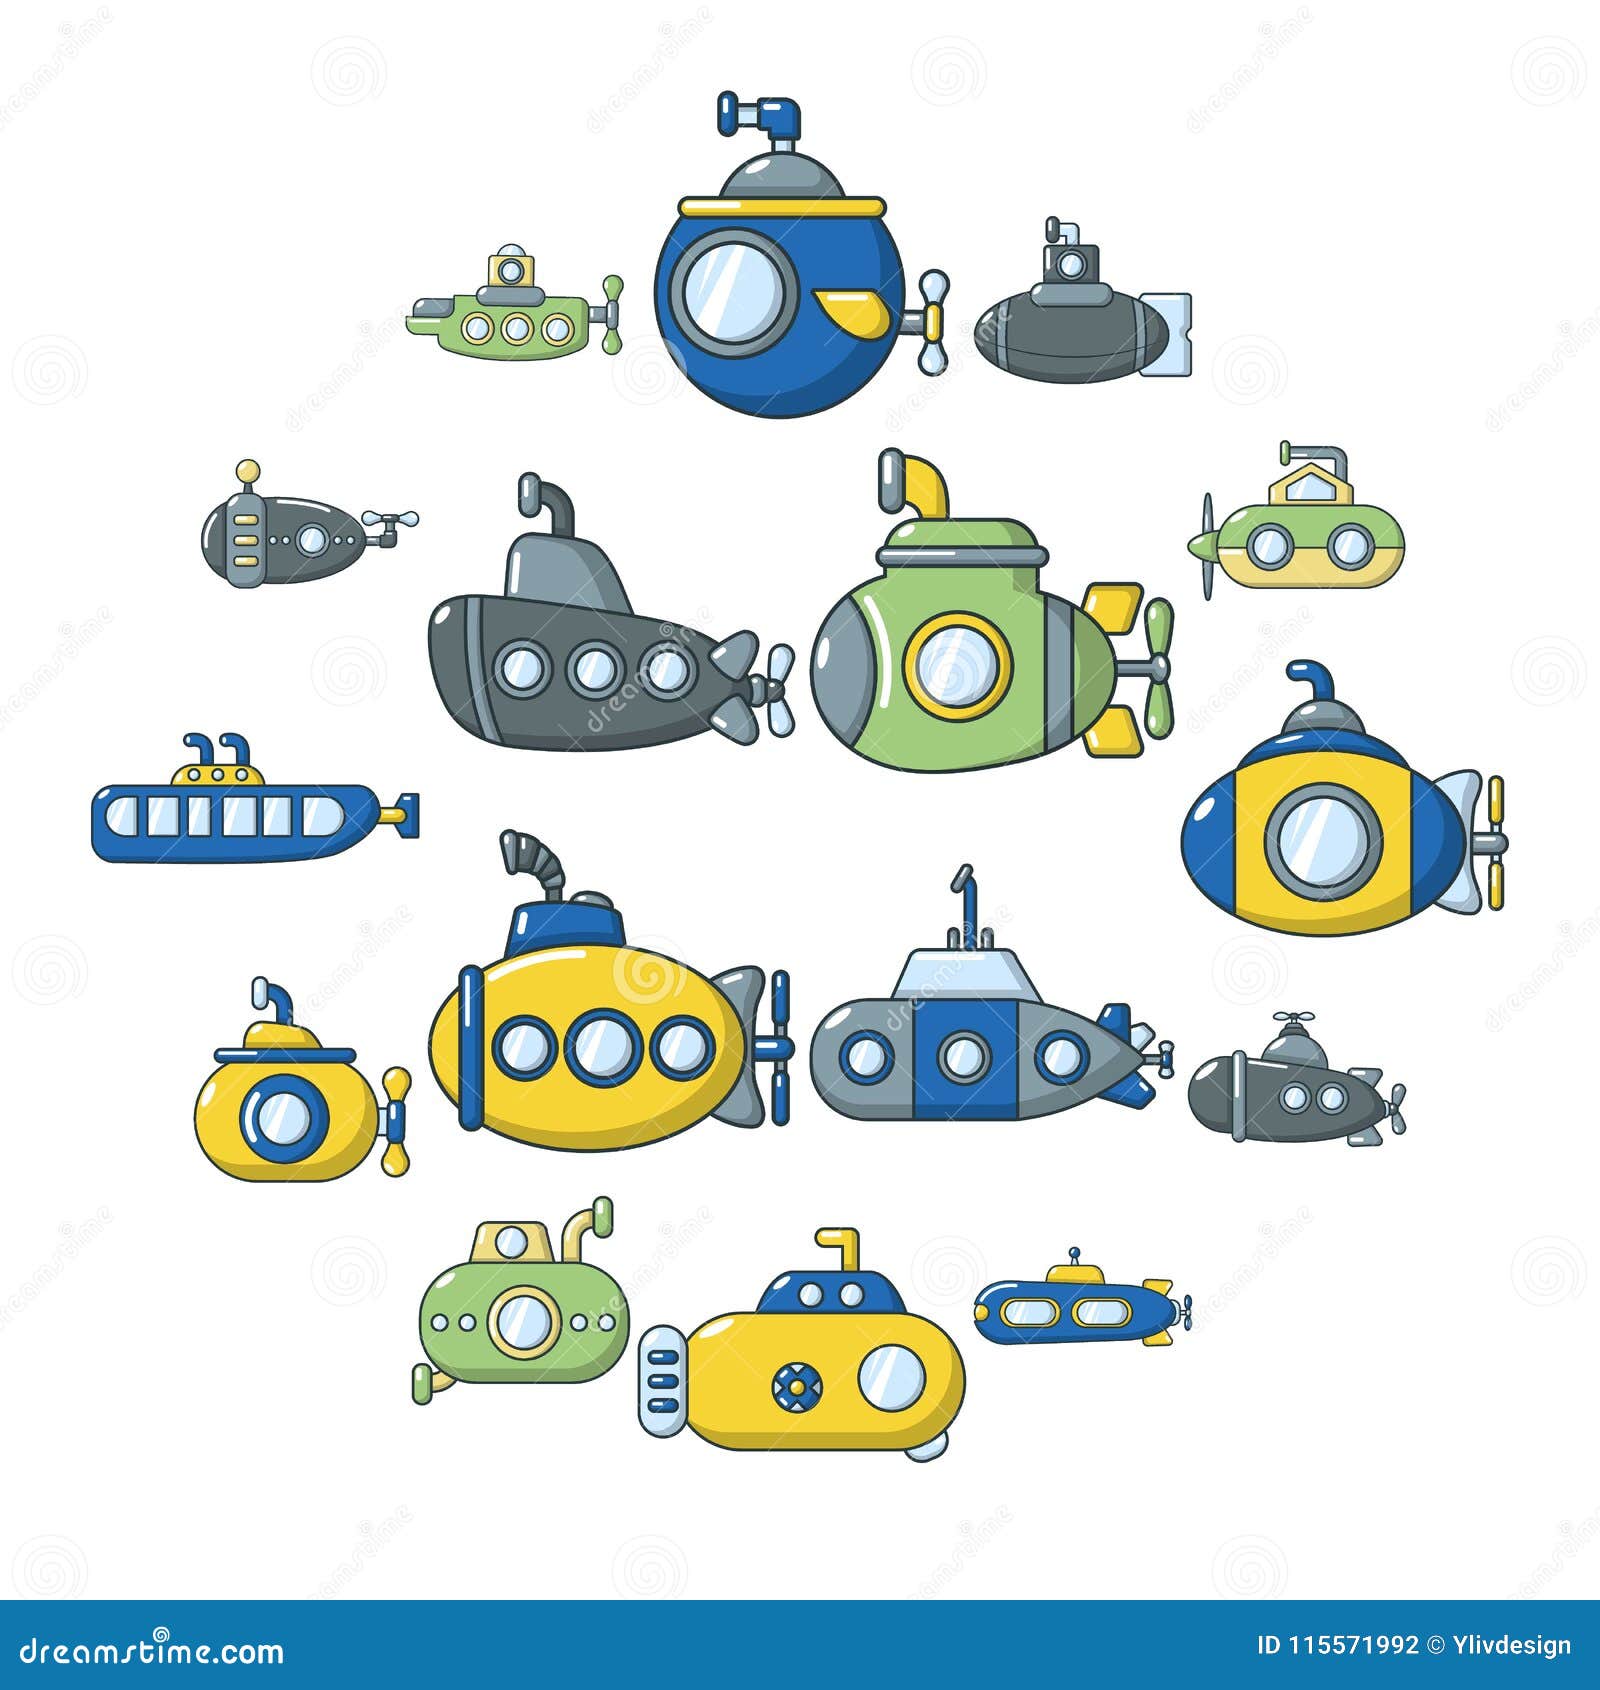 Submarine Icons Set, Cartoon Style Stock Vector - Illustration of porthole,  exploration: 115571992